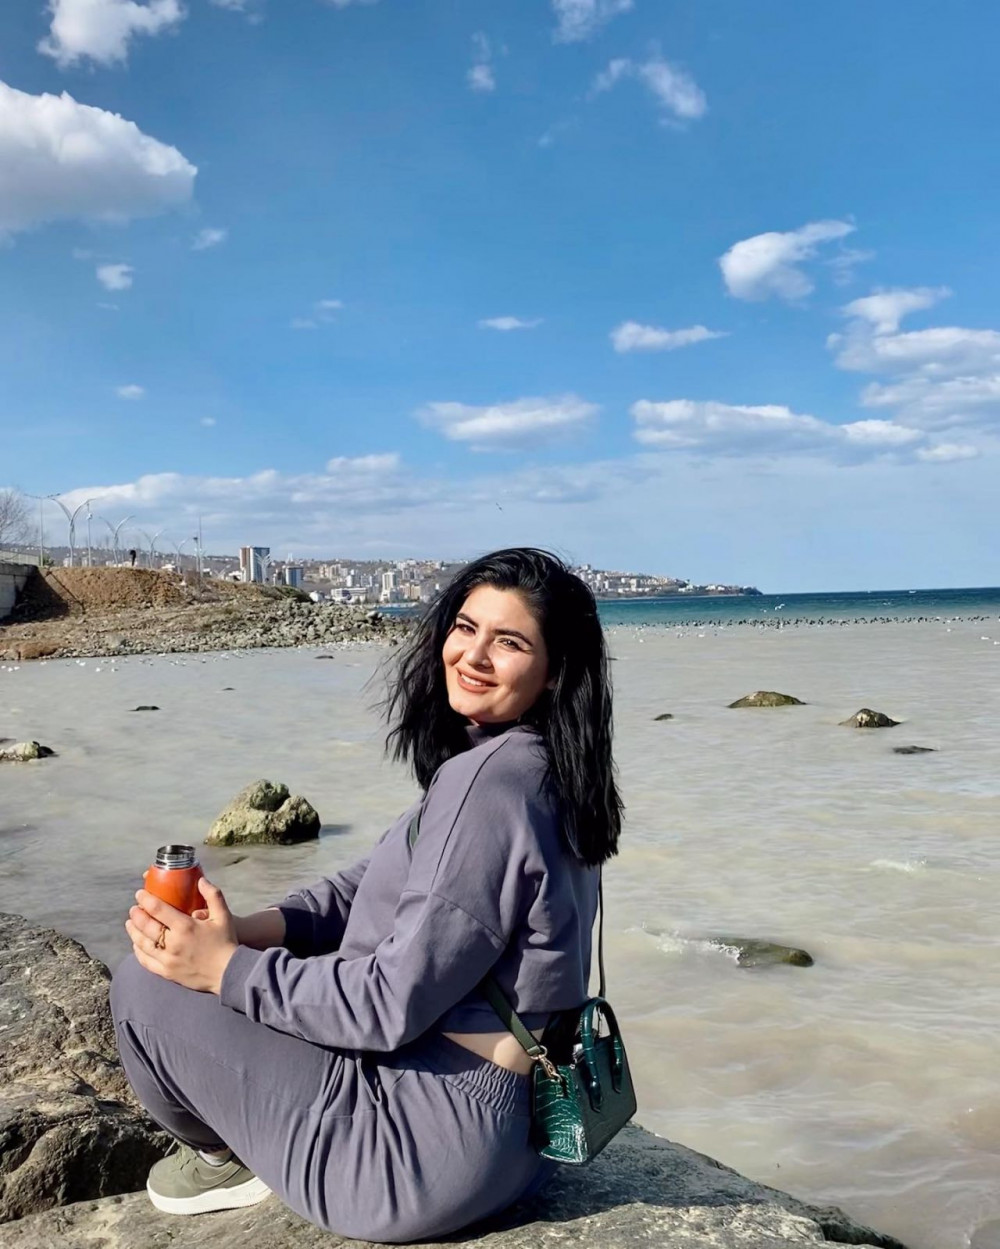 İZDİVAÇ FENOMENİ: Zuhal Topal'ın Gelin Adayı Hanife'den Bikinili Paylaşım! - Resim: 4